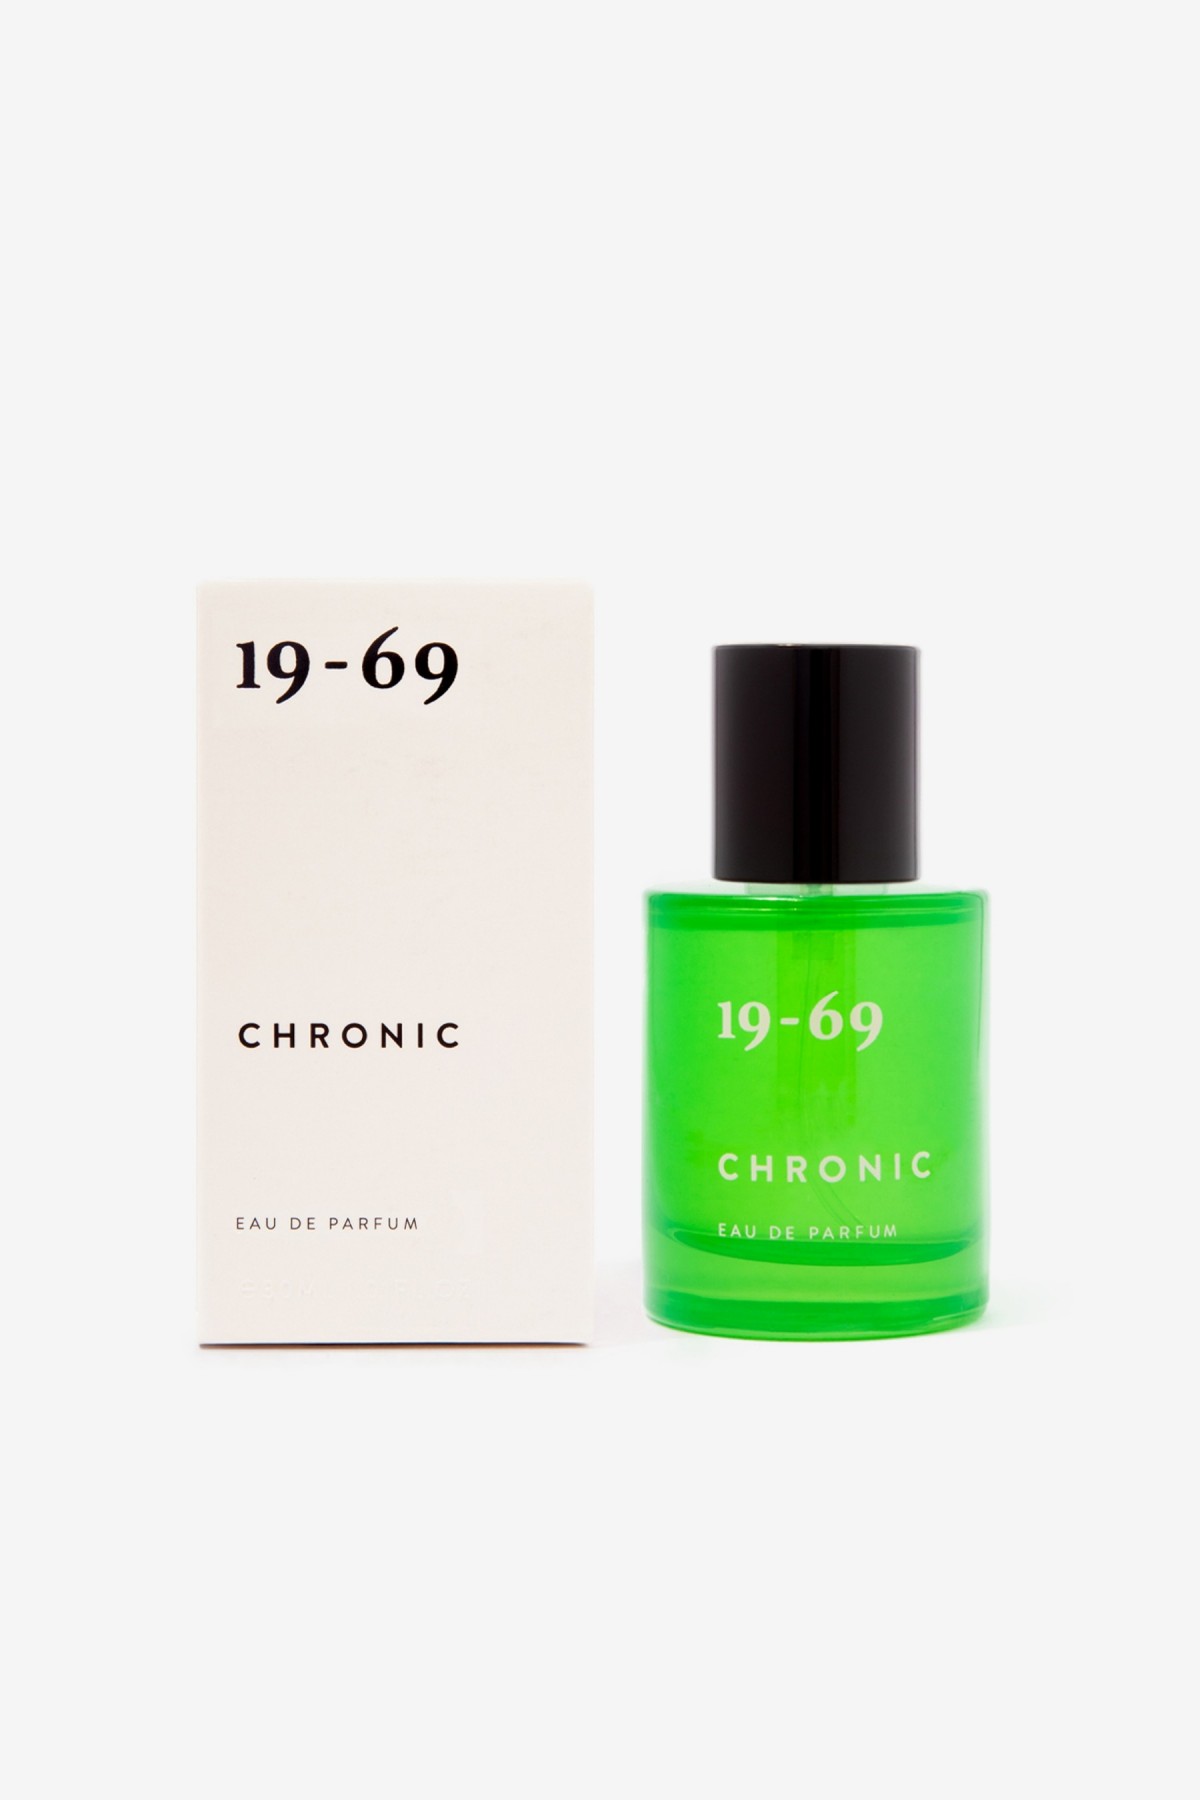 19-69 Chronic Eau de Parfum in 30ml